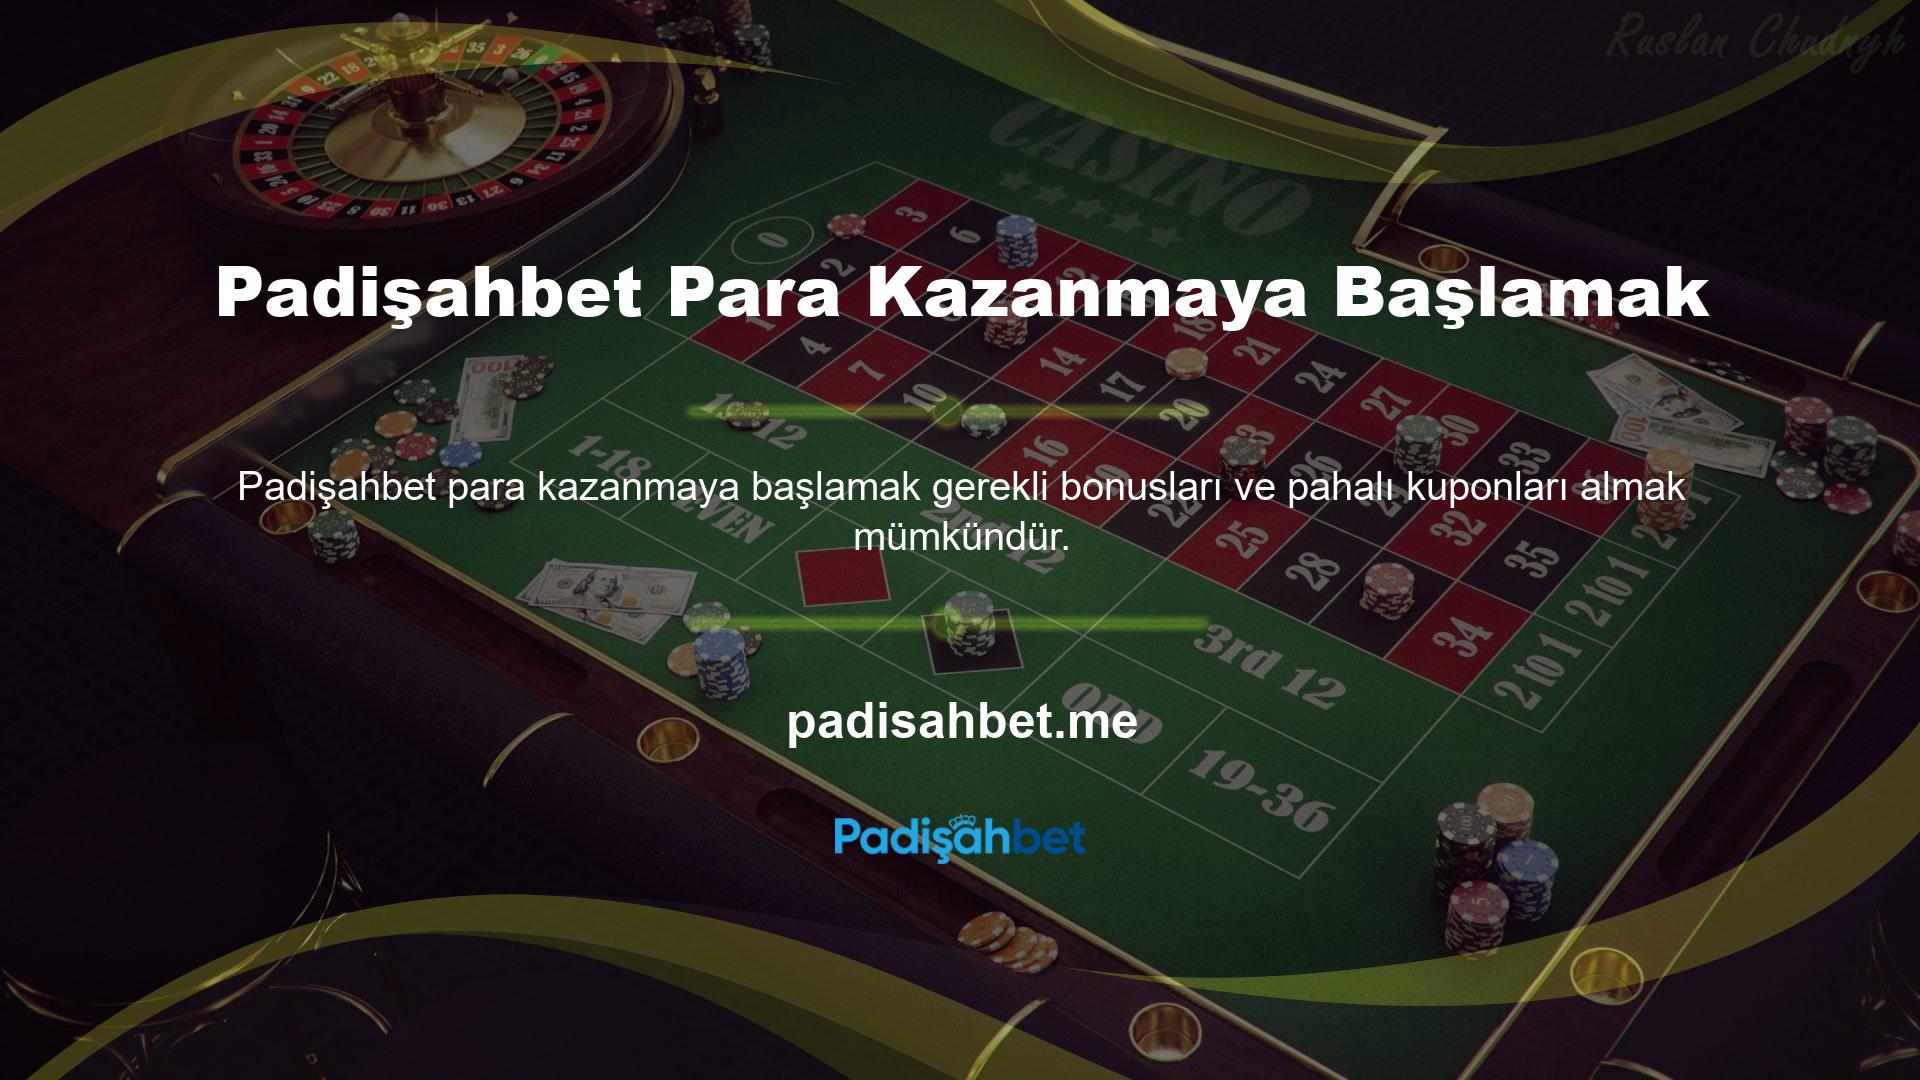 Avrupalı ​​bahis siteleri ve uluslararası casino oyun sağlayıcıları birlikte çalışmaktadır